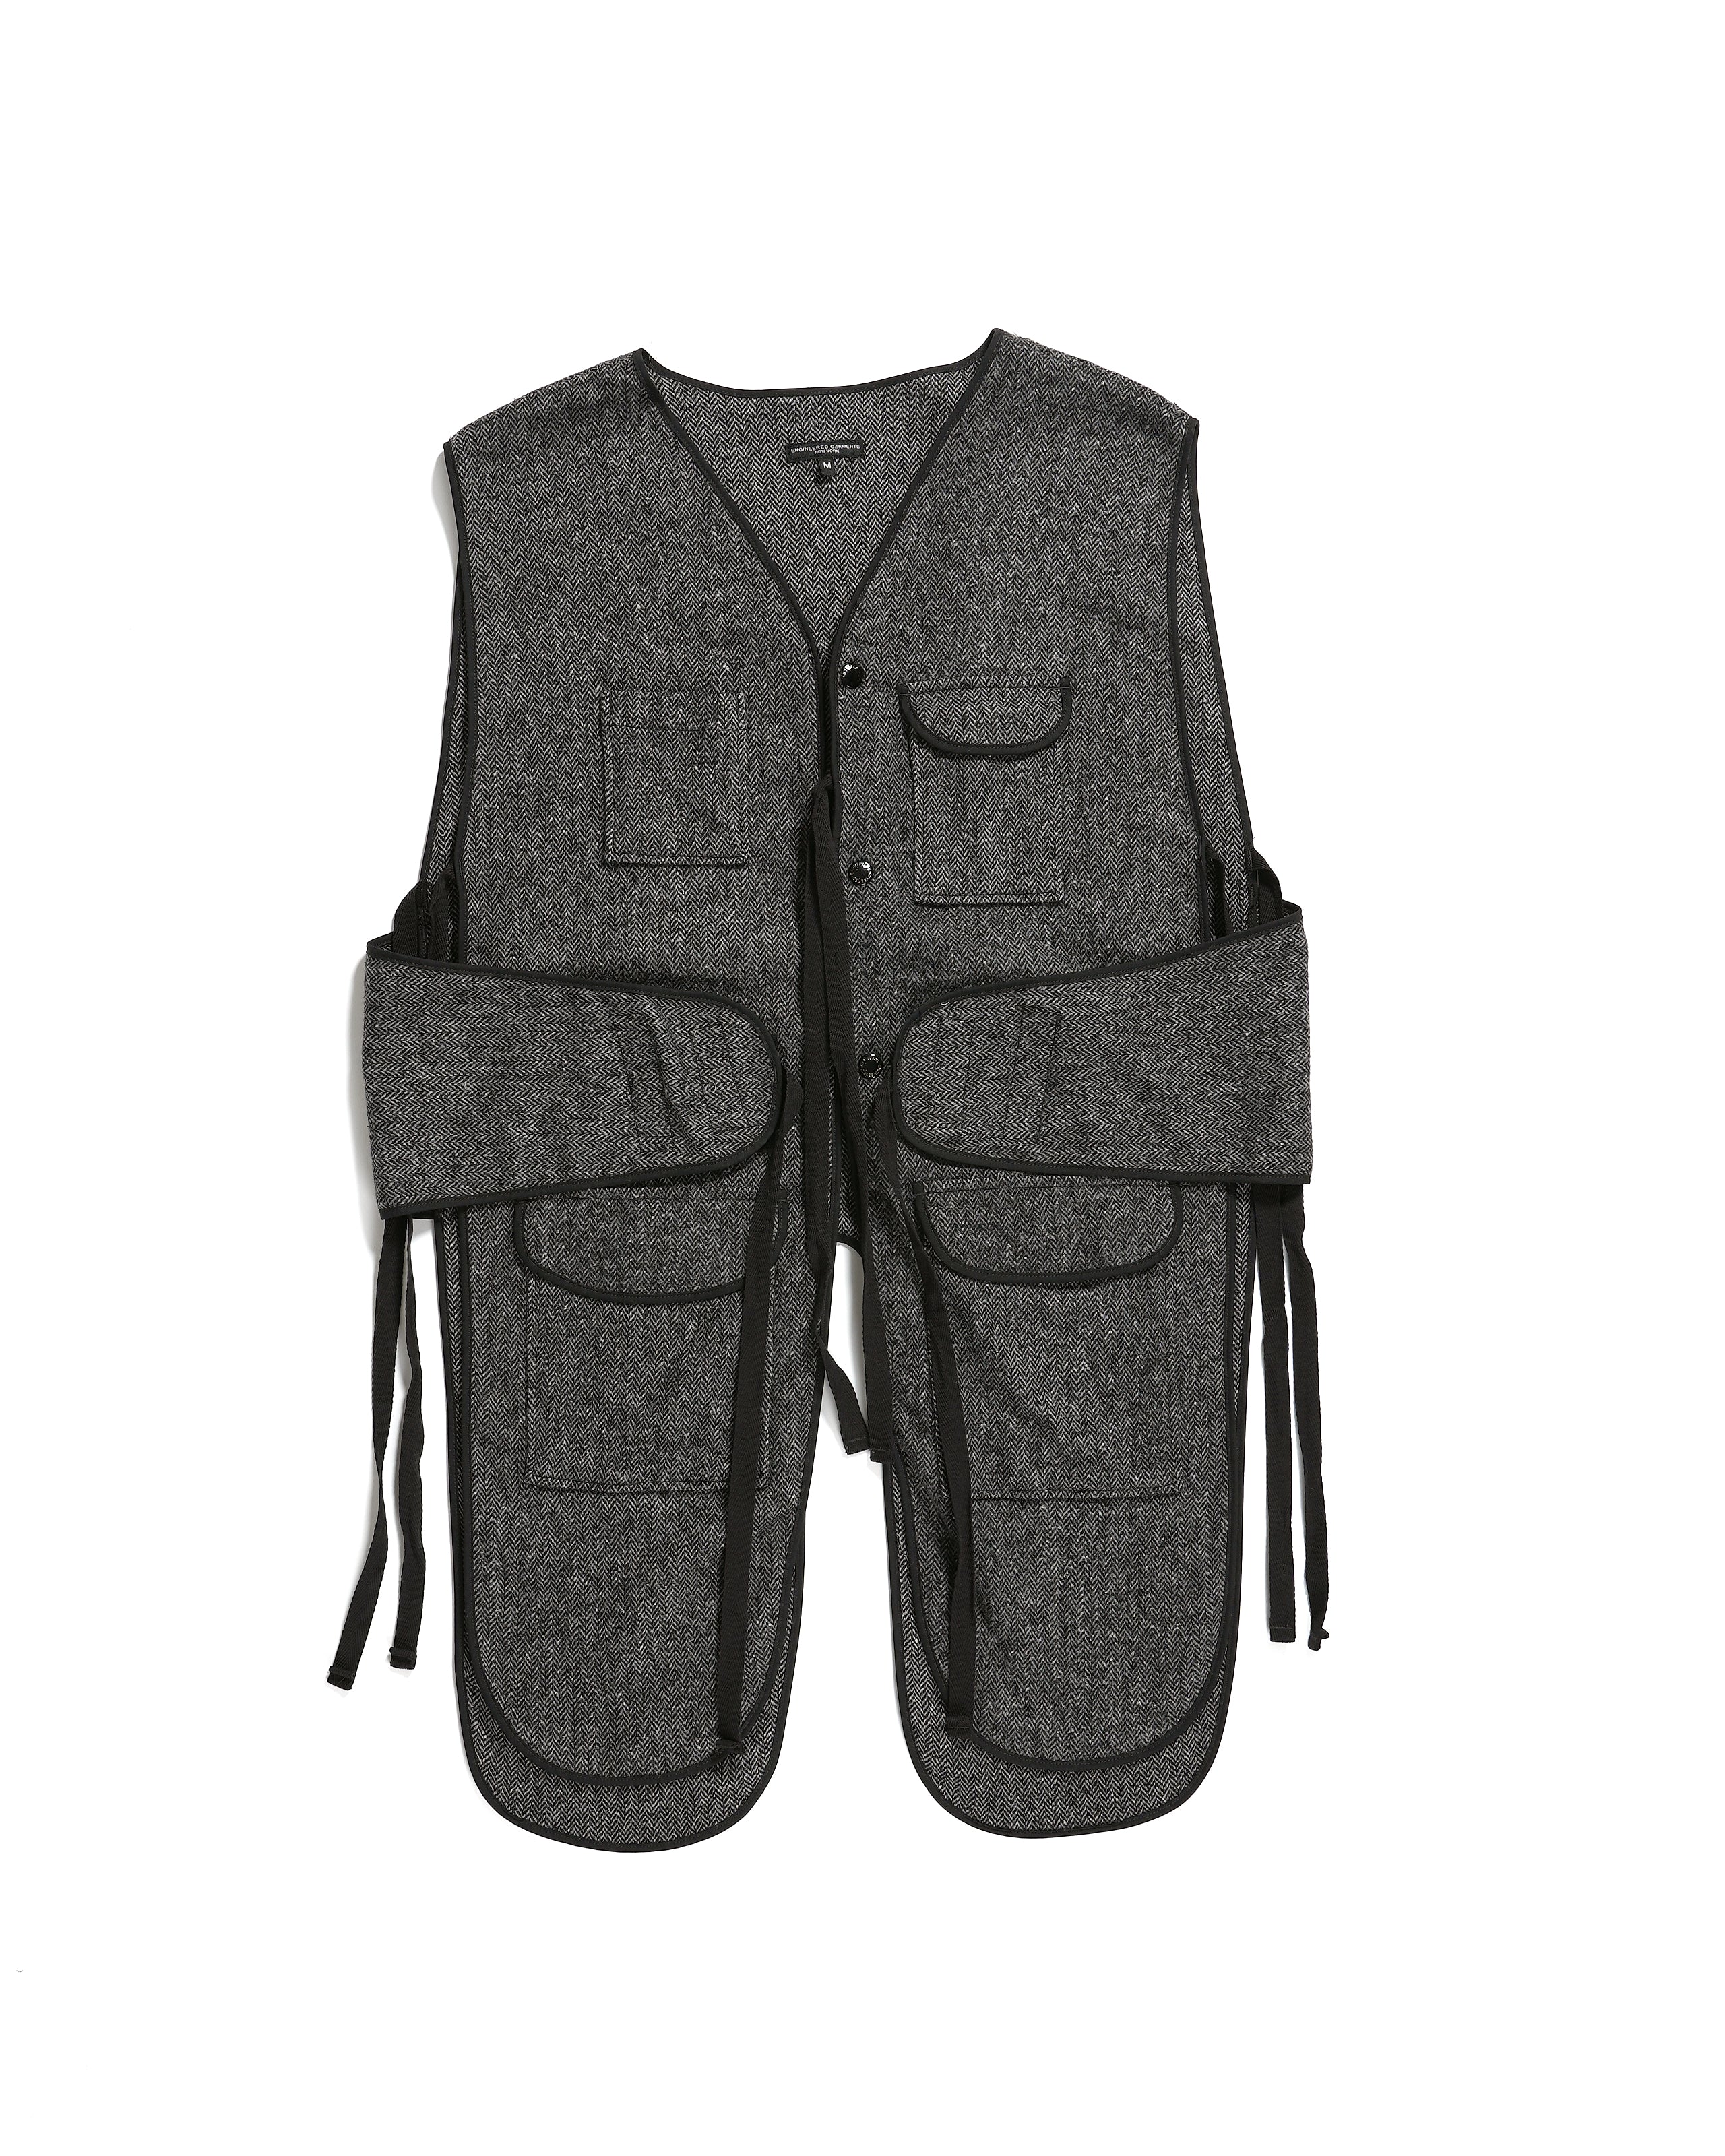 Liner Vest - Grey Poly Wool Herringbone